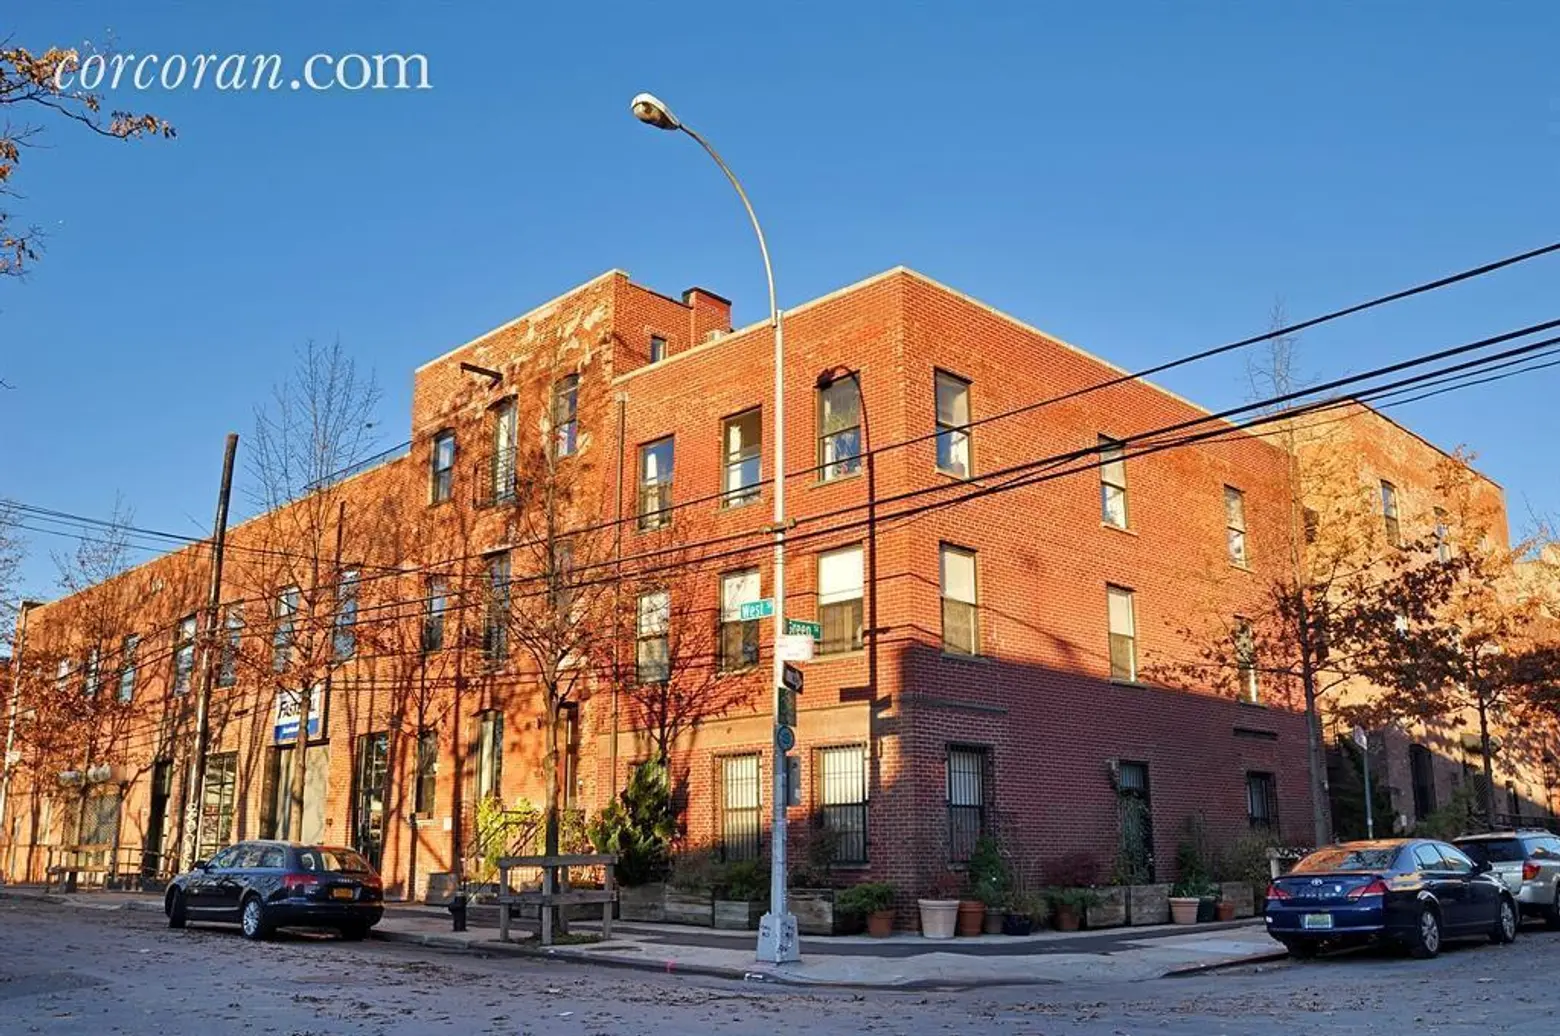 190 West Street, Greenpoint, Loft, Brooklyn loft for sale, Greenpoint Landing, Brooklyn